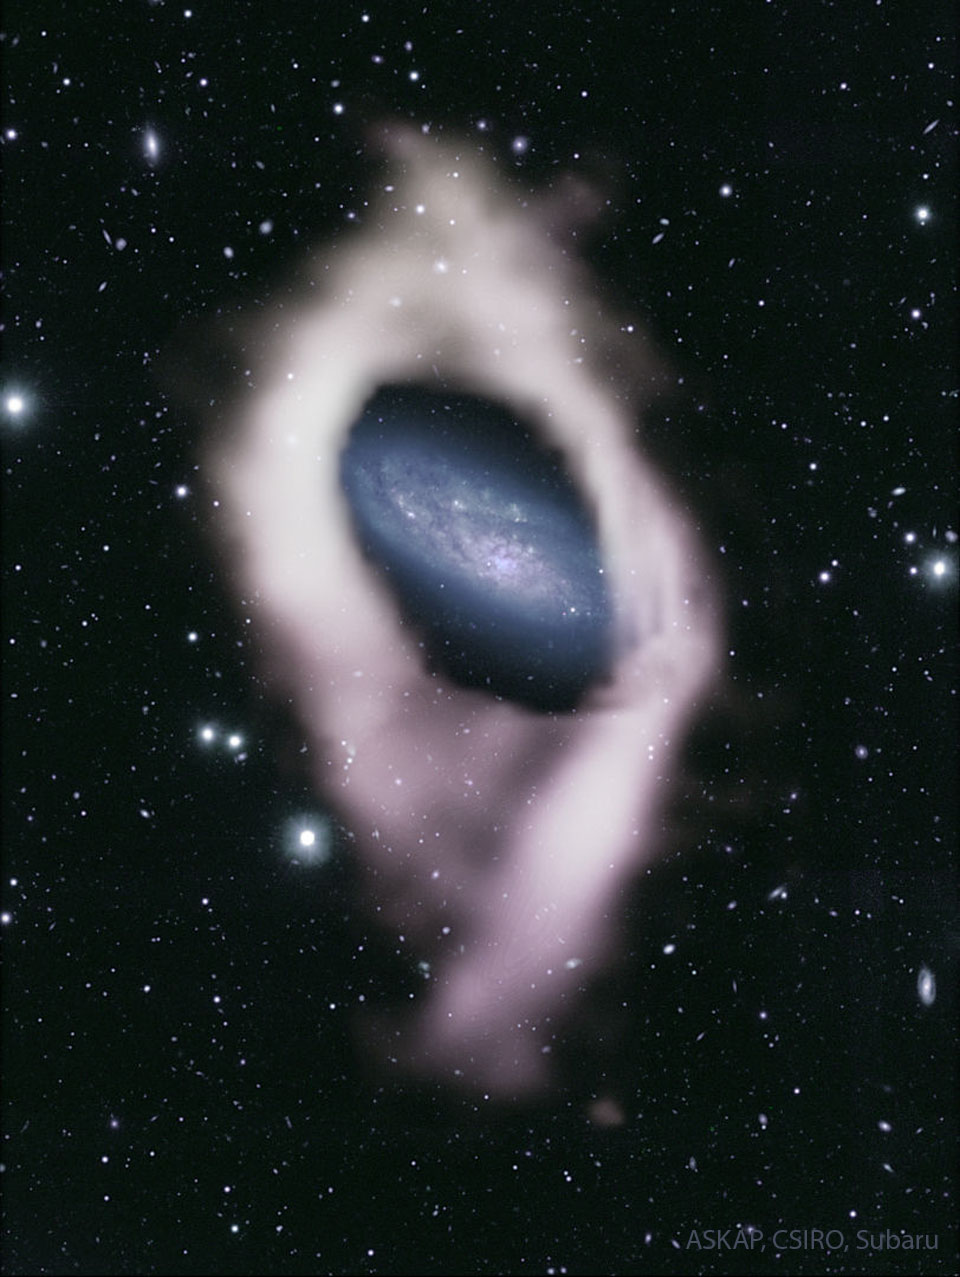 W centrum zdjęcia galaktyka z błękitnymi ramionami spiralnymi
widoczna jest pośród licznych gwiazd pierwszego planu. Ową
galaktykę otacza biała obwoluta, składająca się z wodoru.
Zobacz opis. Po kliknięciu obrazka załaduje się wersja o największej
dostępnej rozdzielczości.